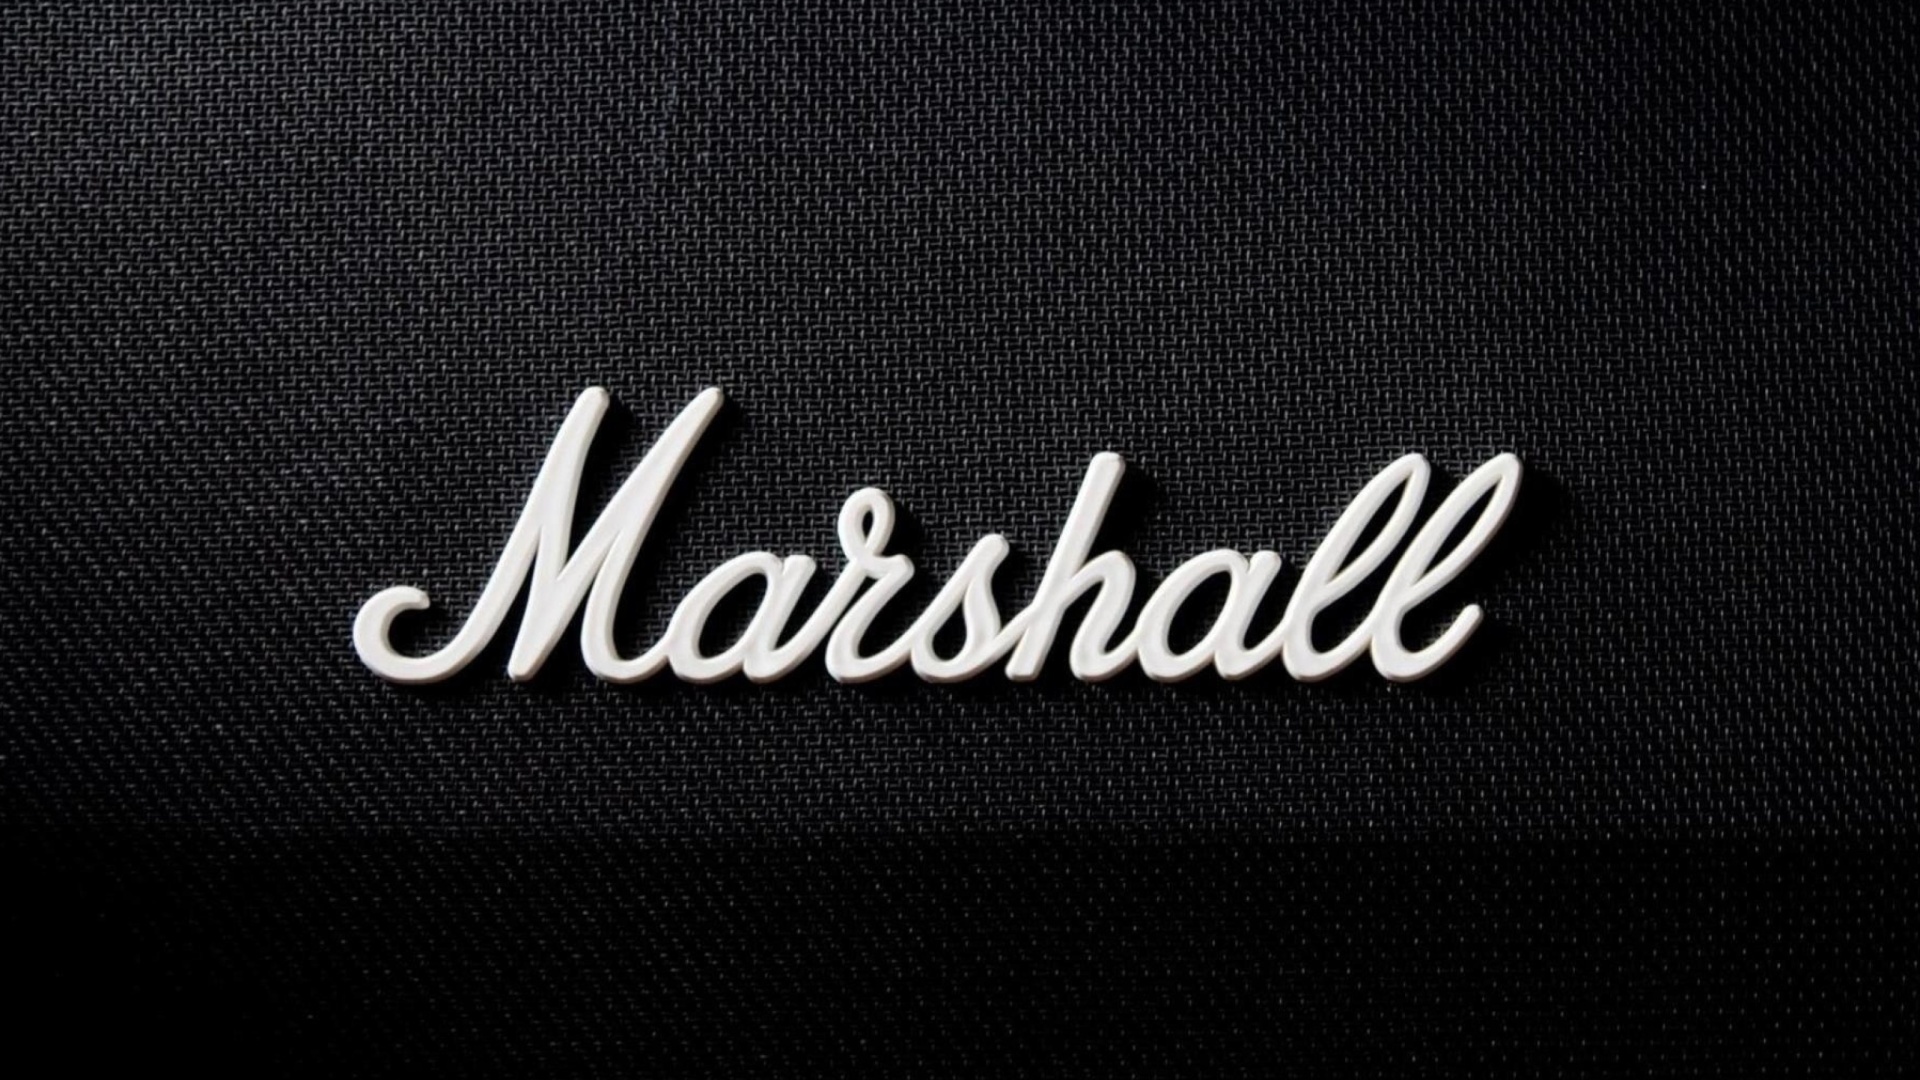 Marshall Logo Wallpaper for Desktop 1920x1080 Full HD